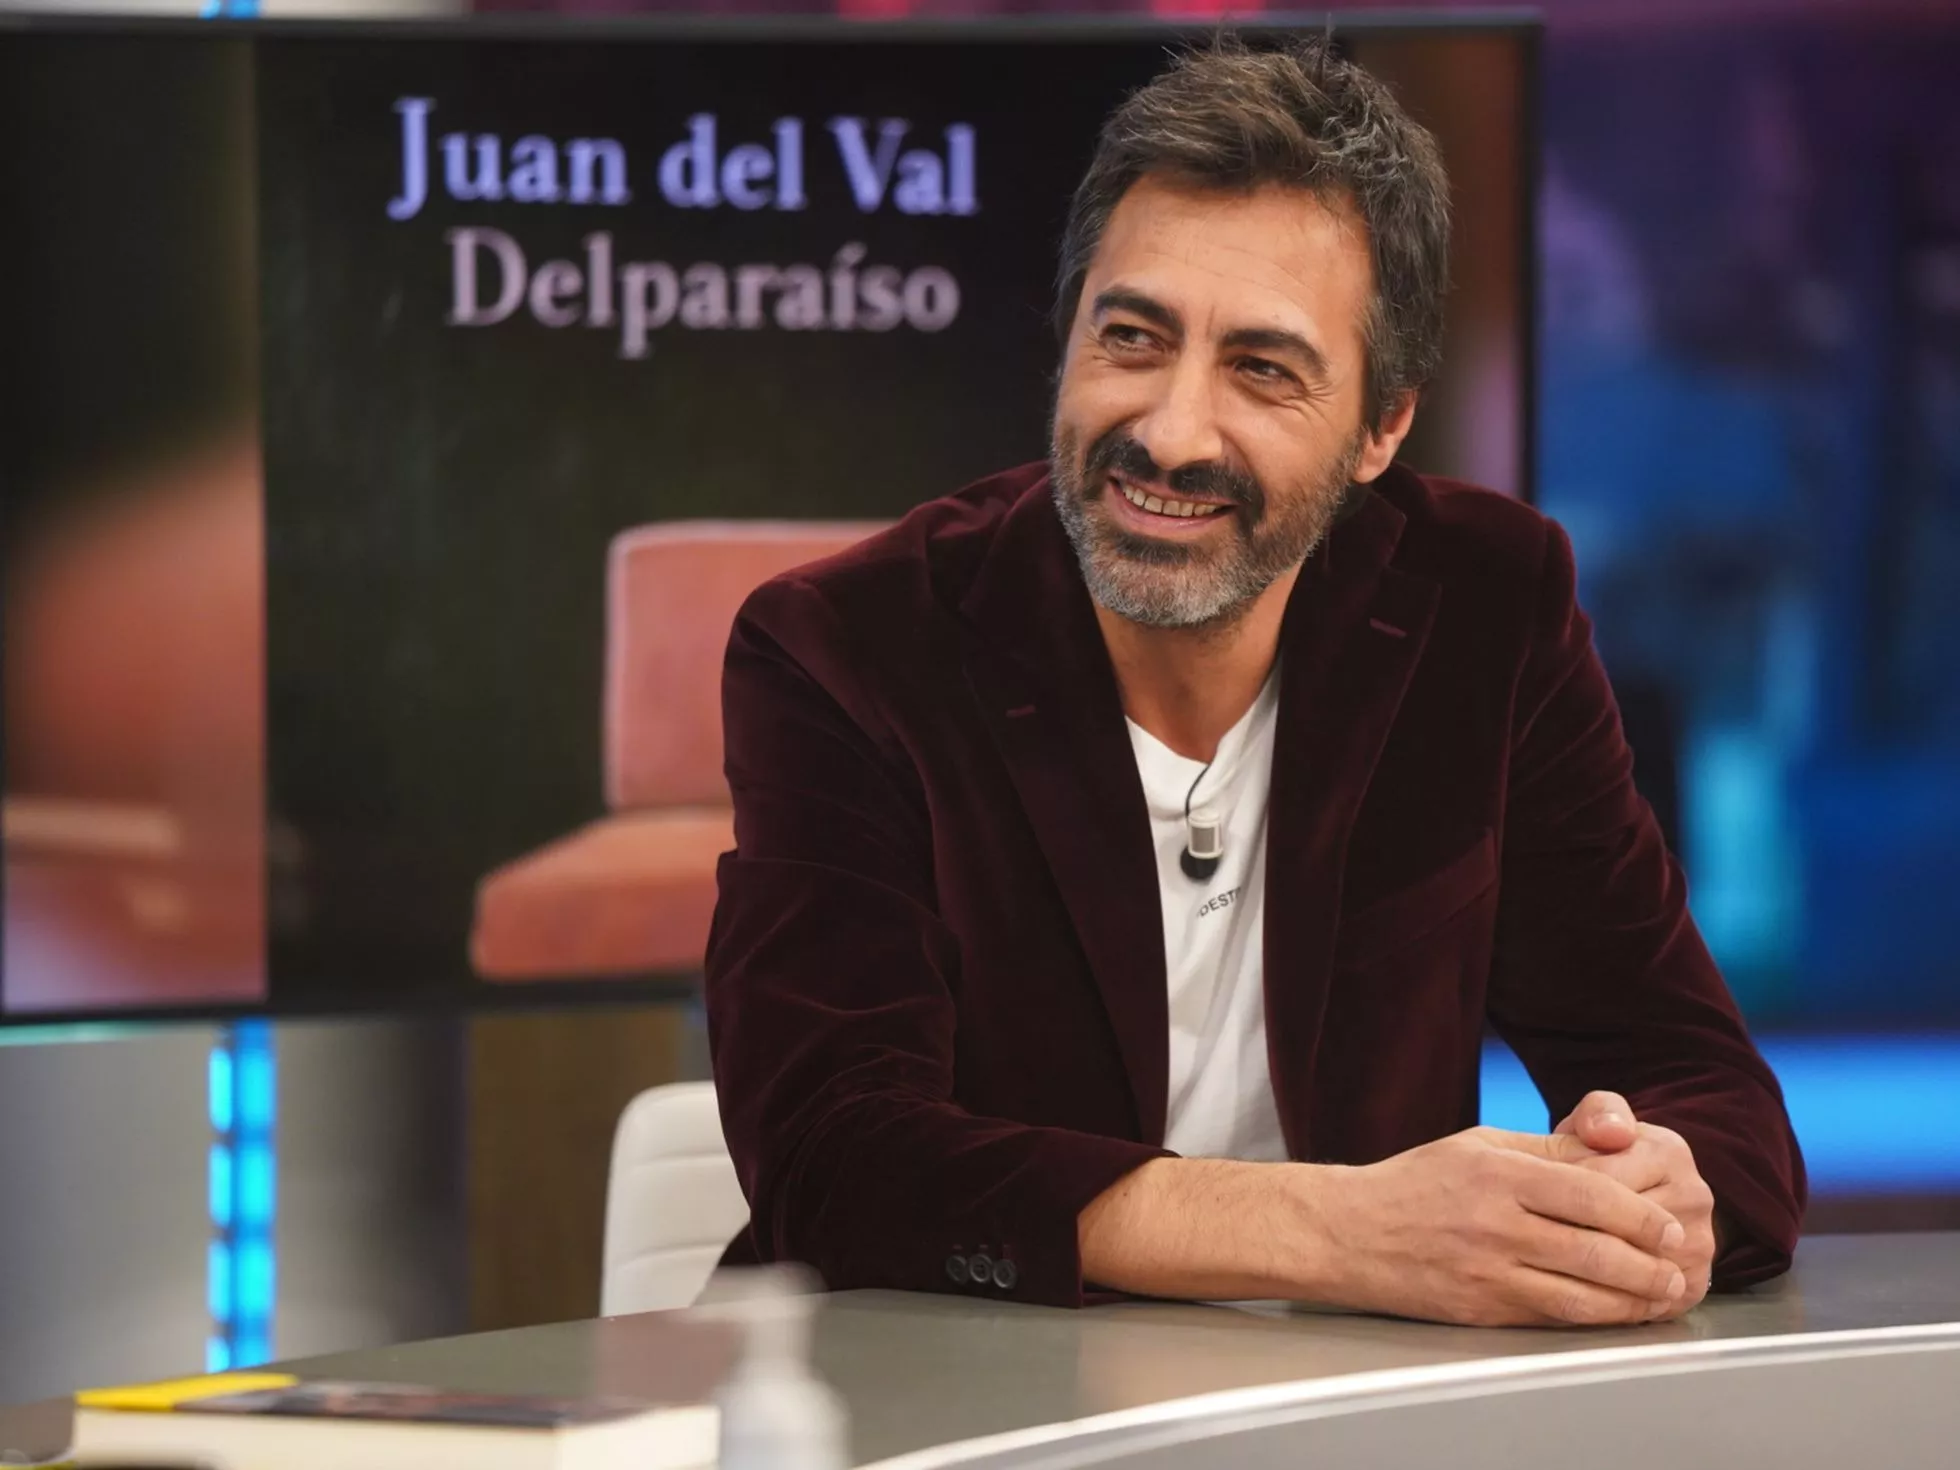 Juan del Val